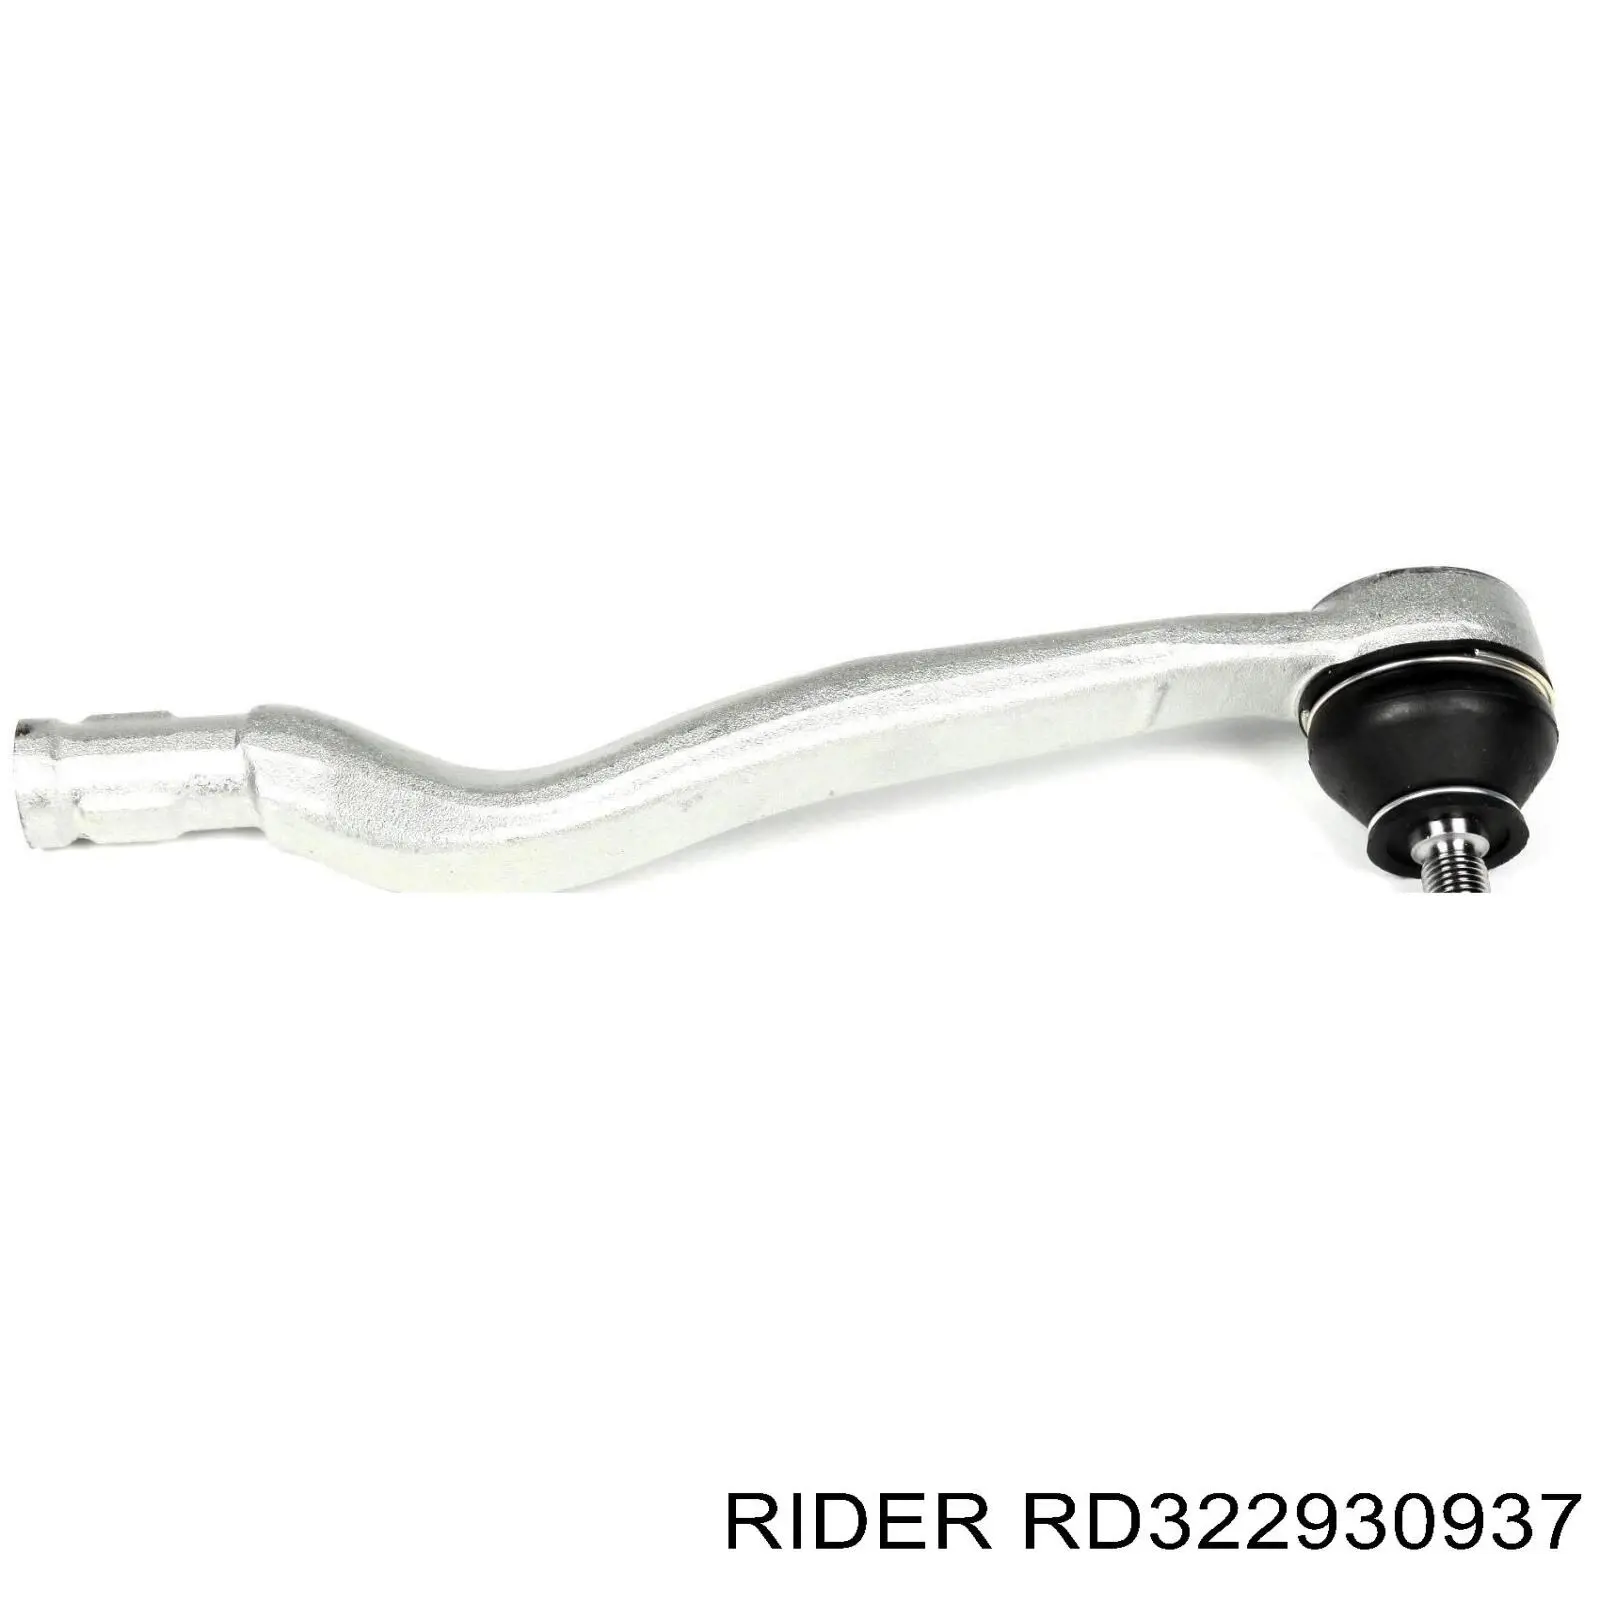 RD322930937 Rider rótula barra de acoplamiento exterior